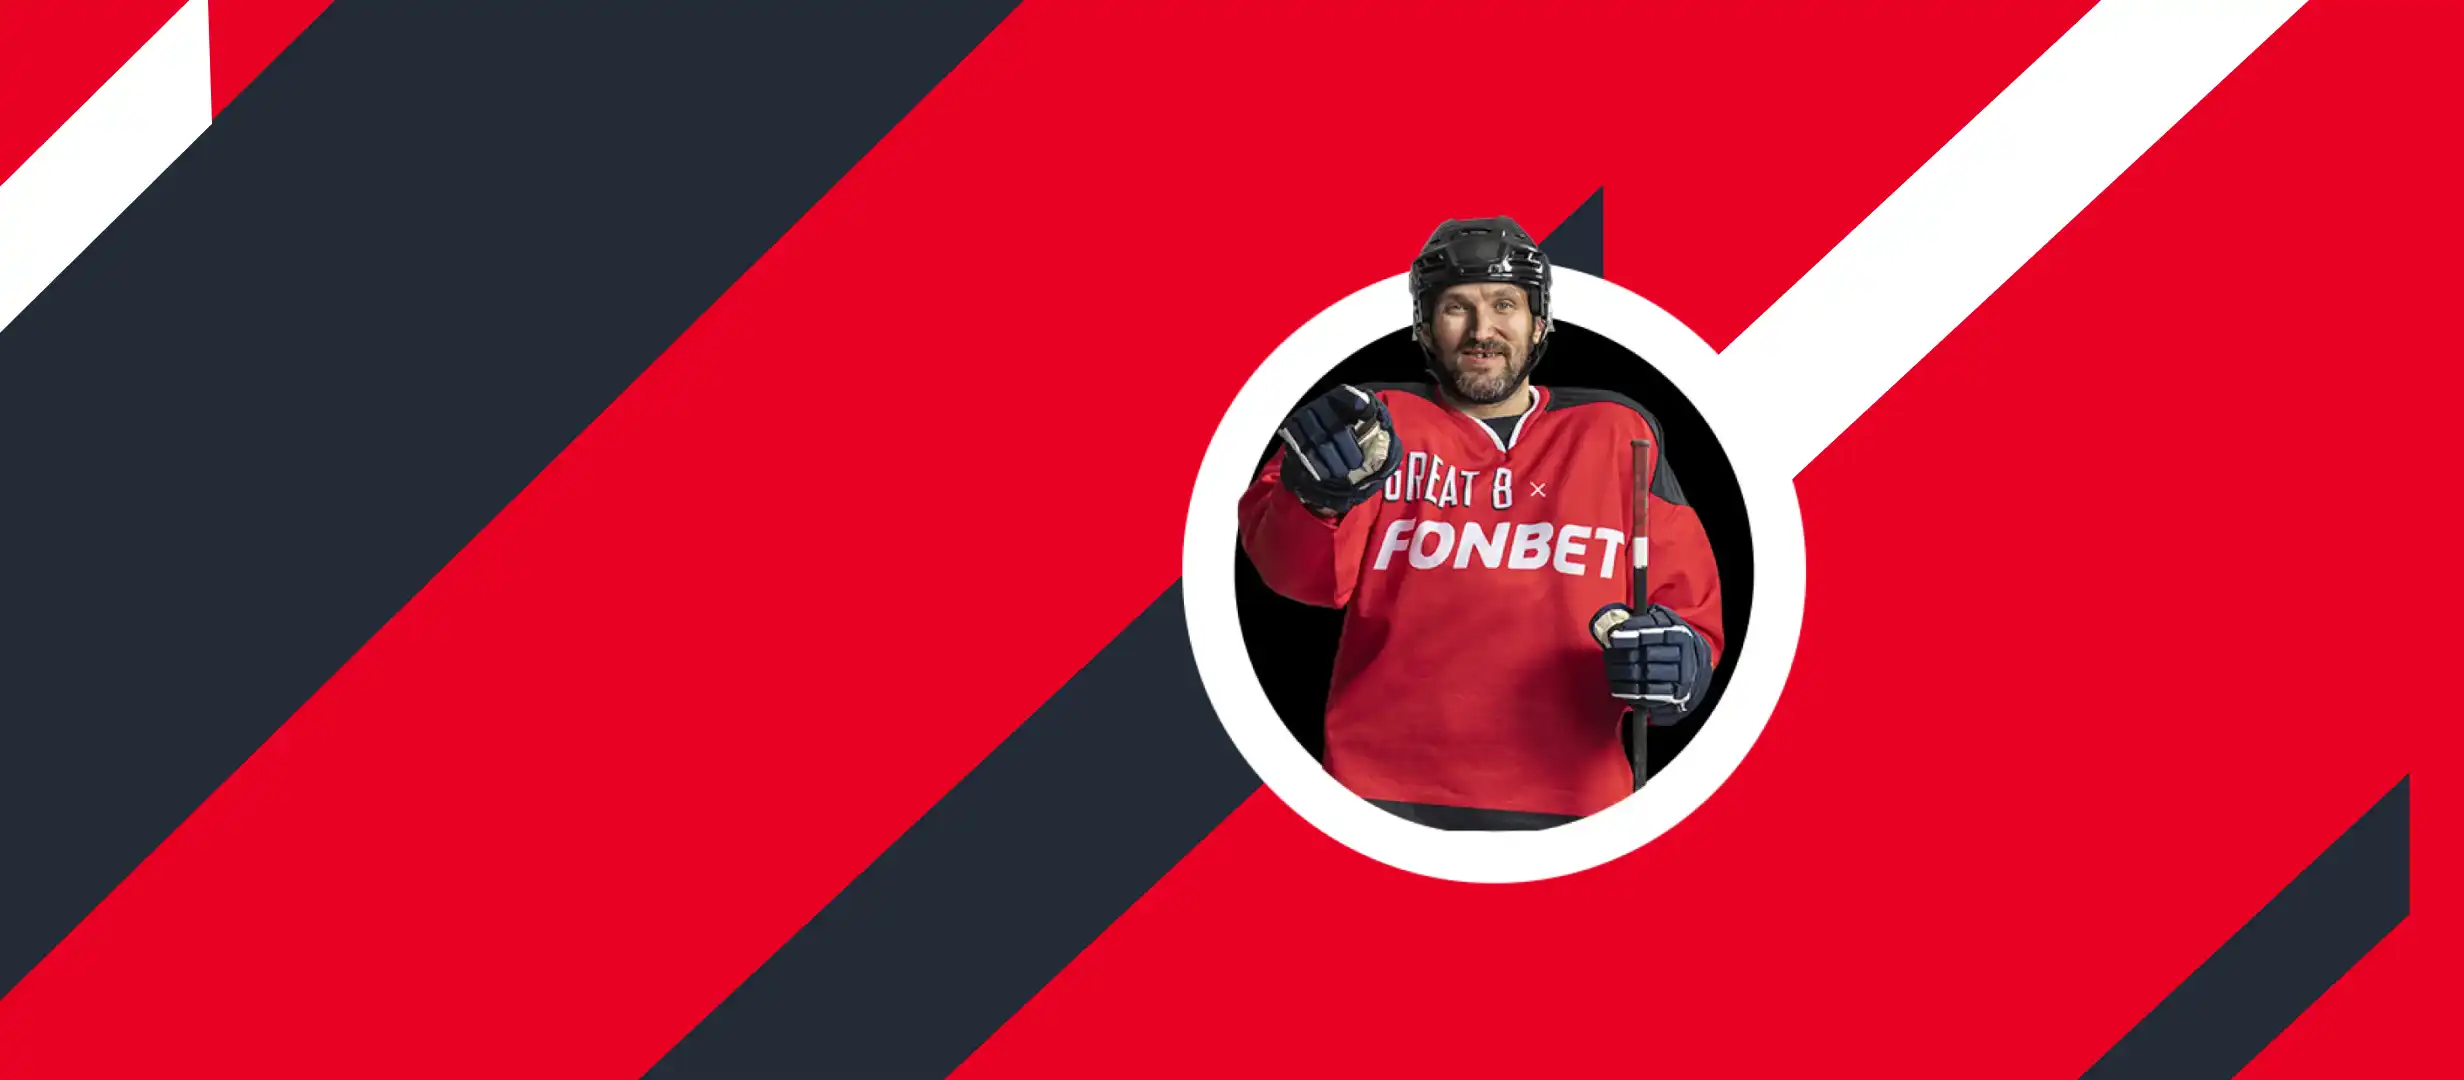 Бесплатные ставки и призы за хоккейные пари в Фонбет